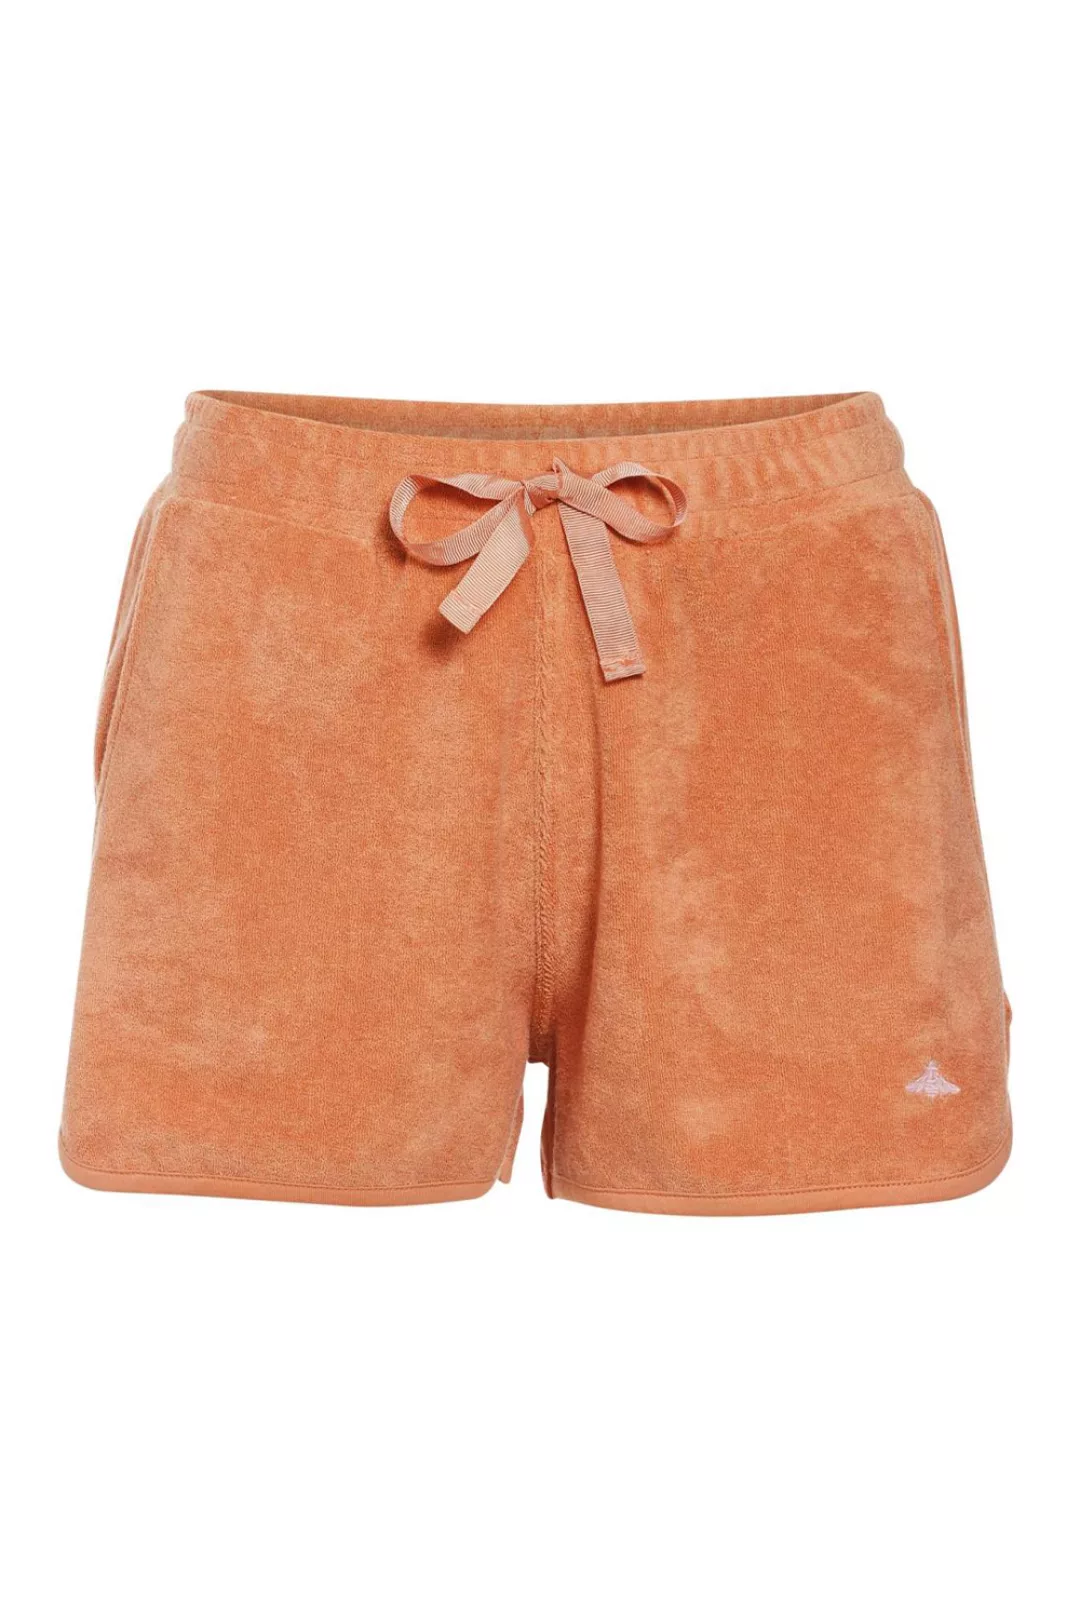 ESSENZA Iva Uni Shorts Frottee dry Loungewear 3 42 orange günstig online kaufen